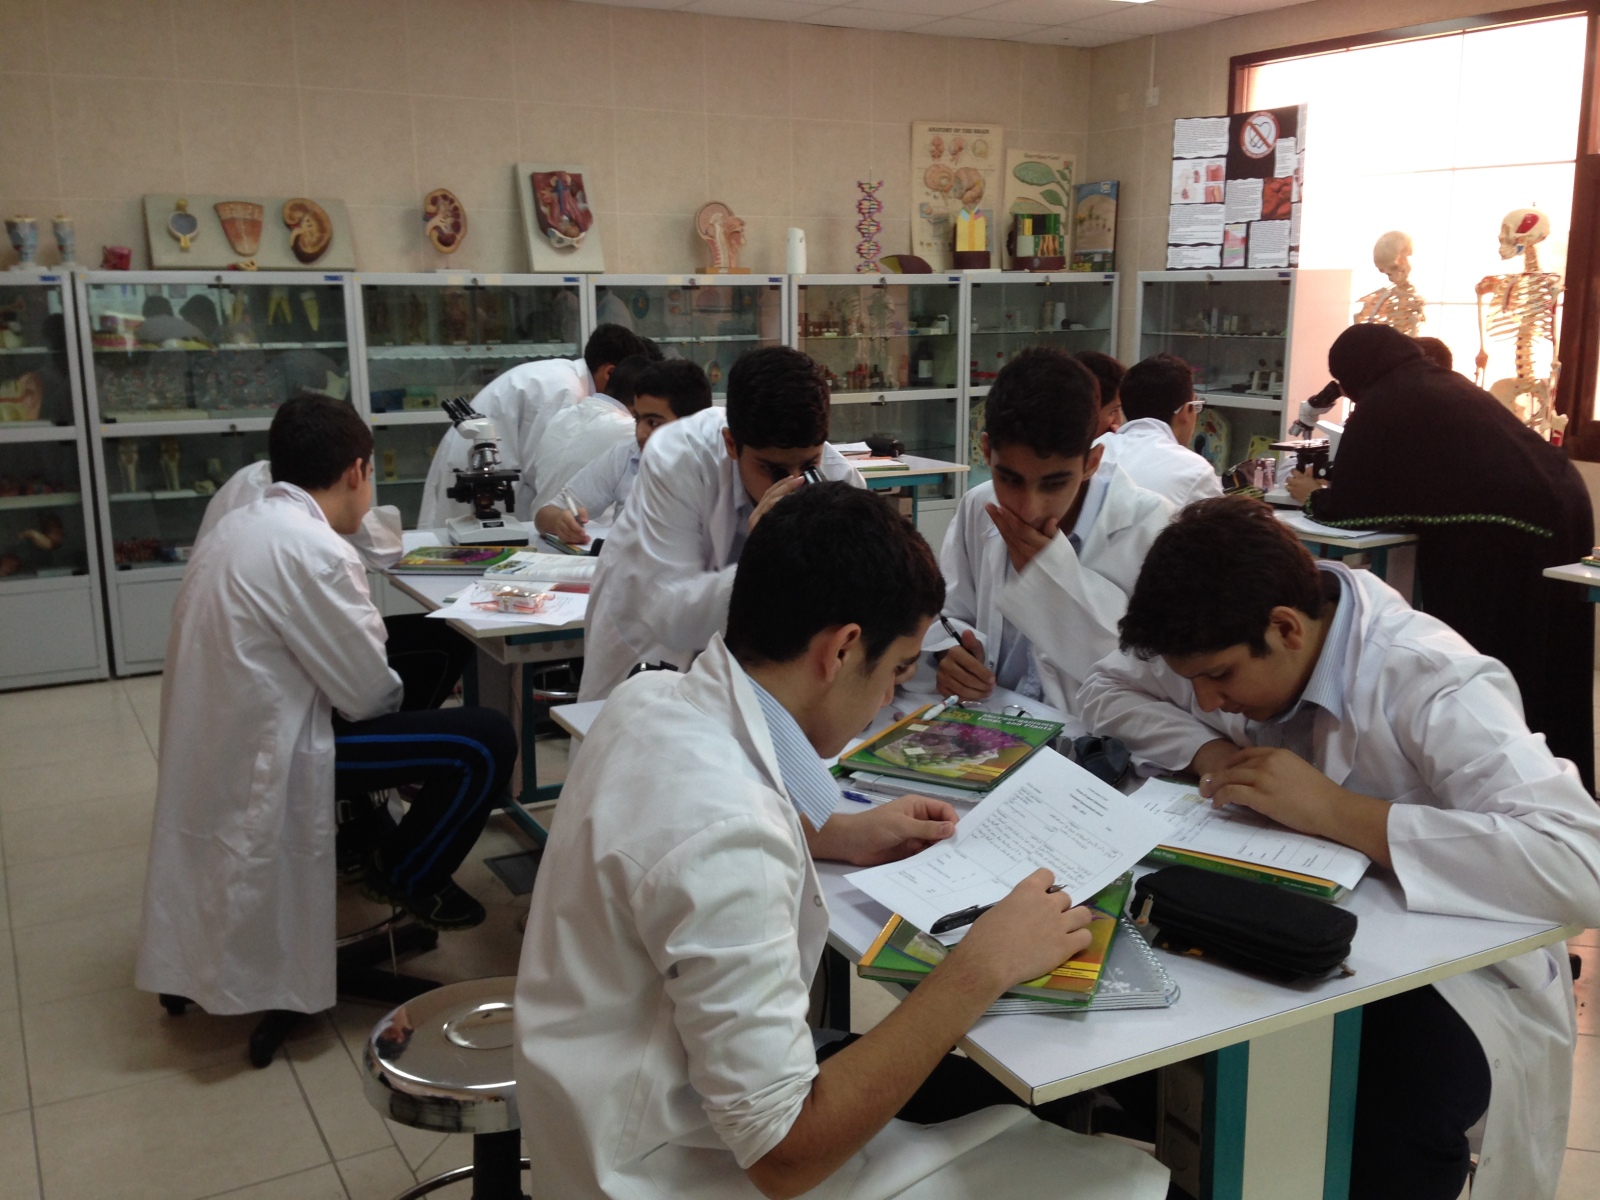 تخفیف ۵۰ درصد تجهیزات آزمایشگاهی ایرانی برای مدارس